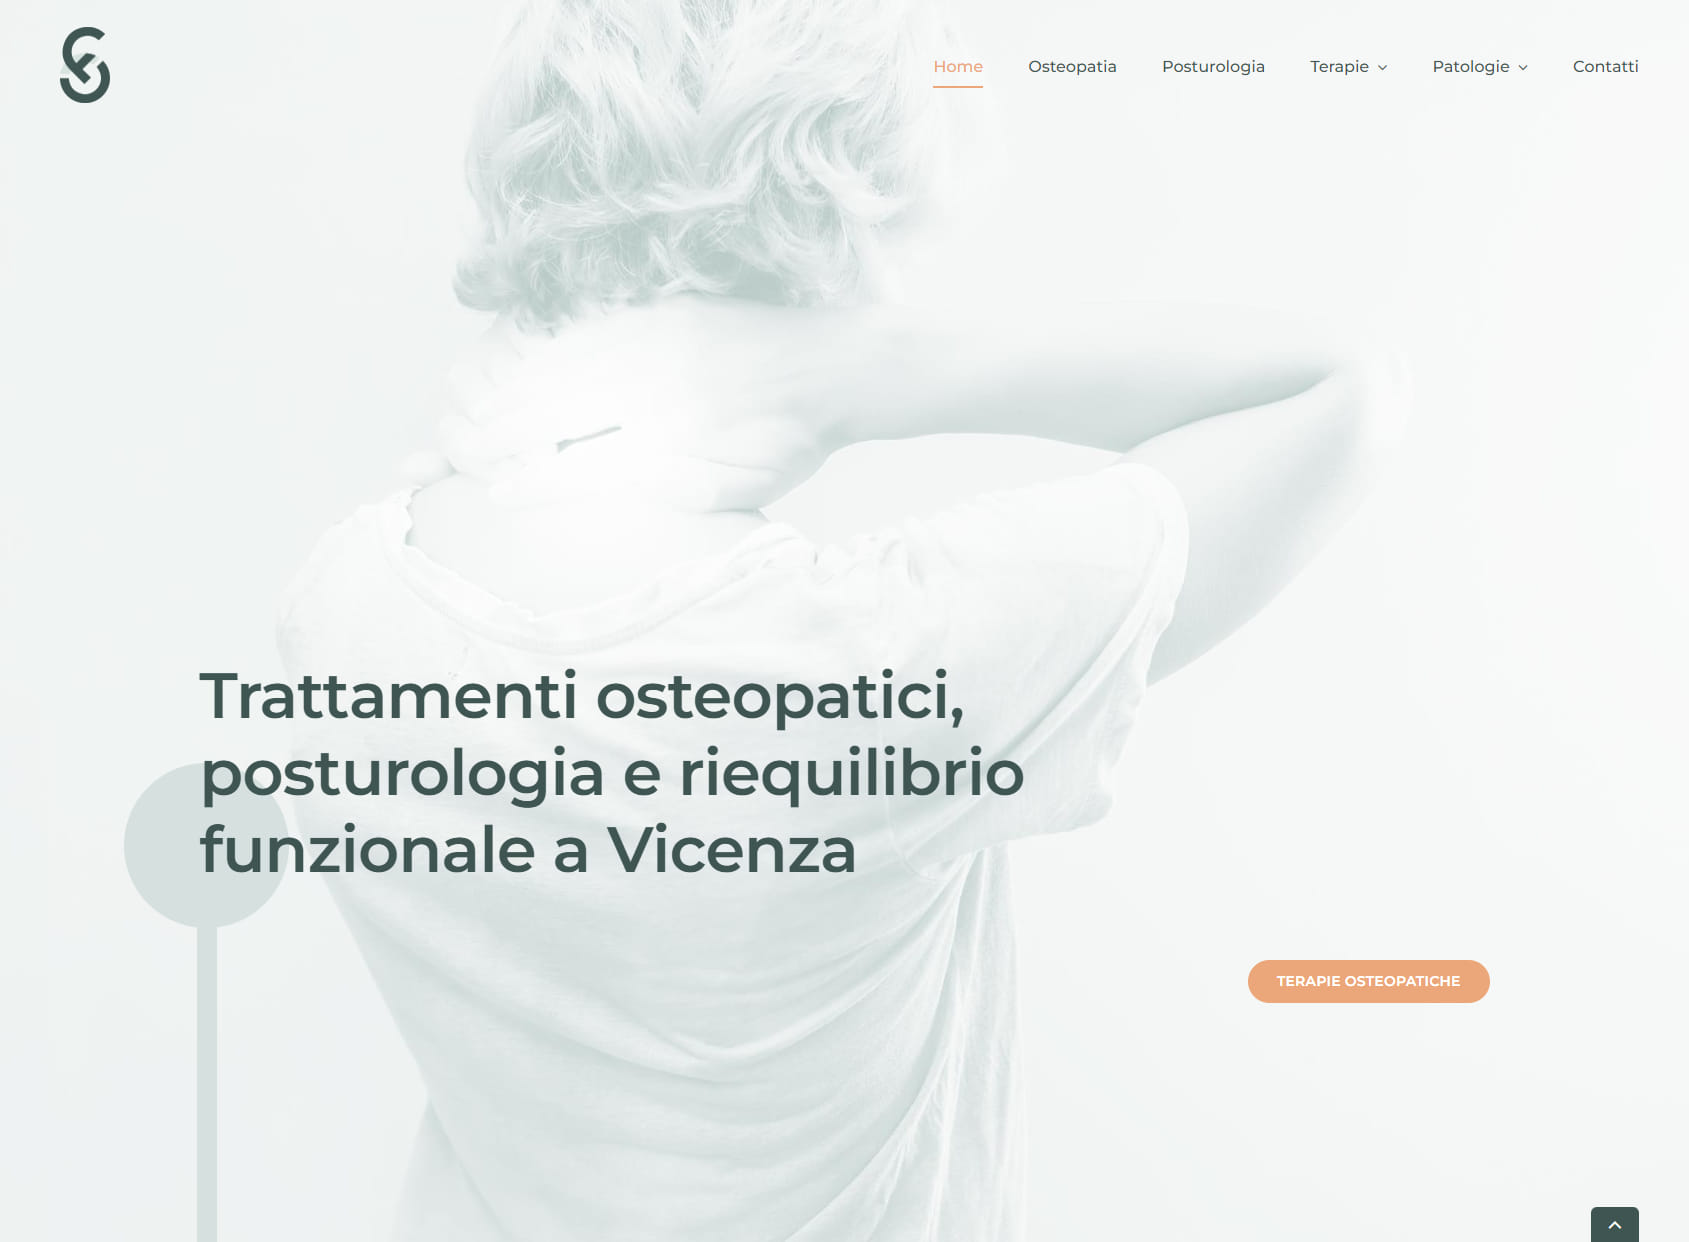 Osteopatia e Posturologia Sacchiero Francesco D.O.